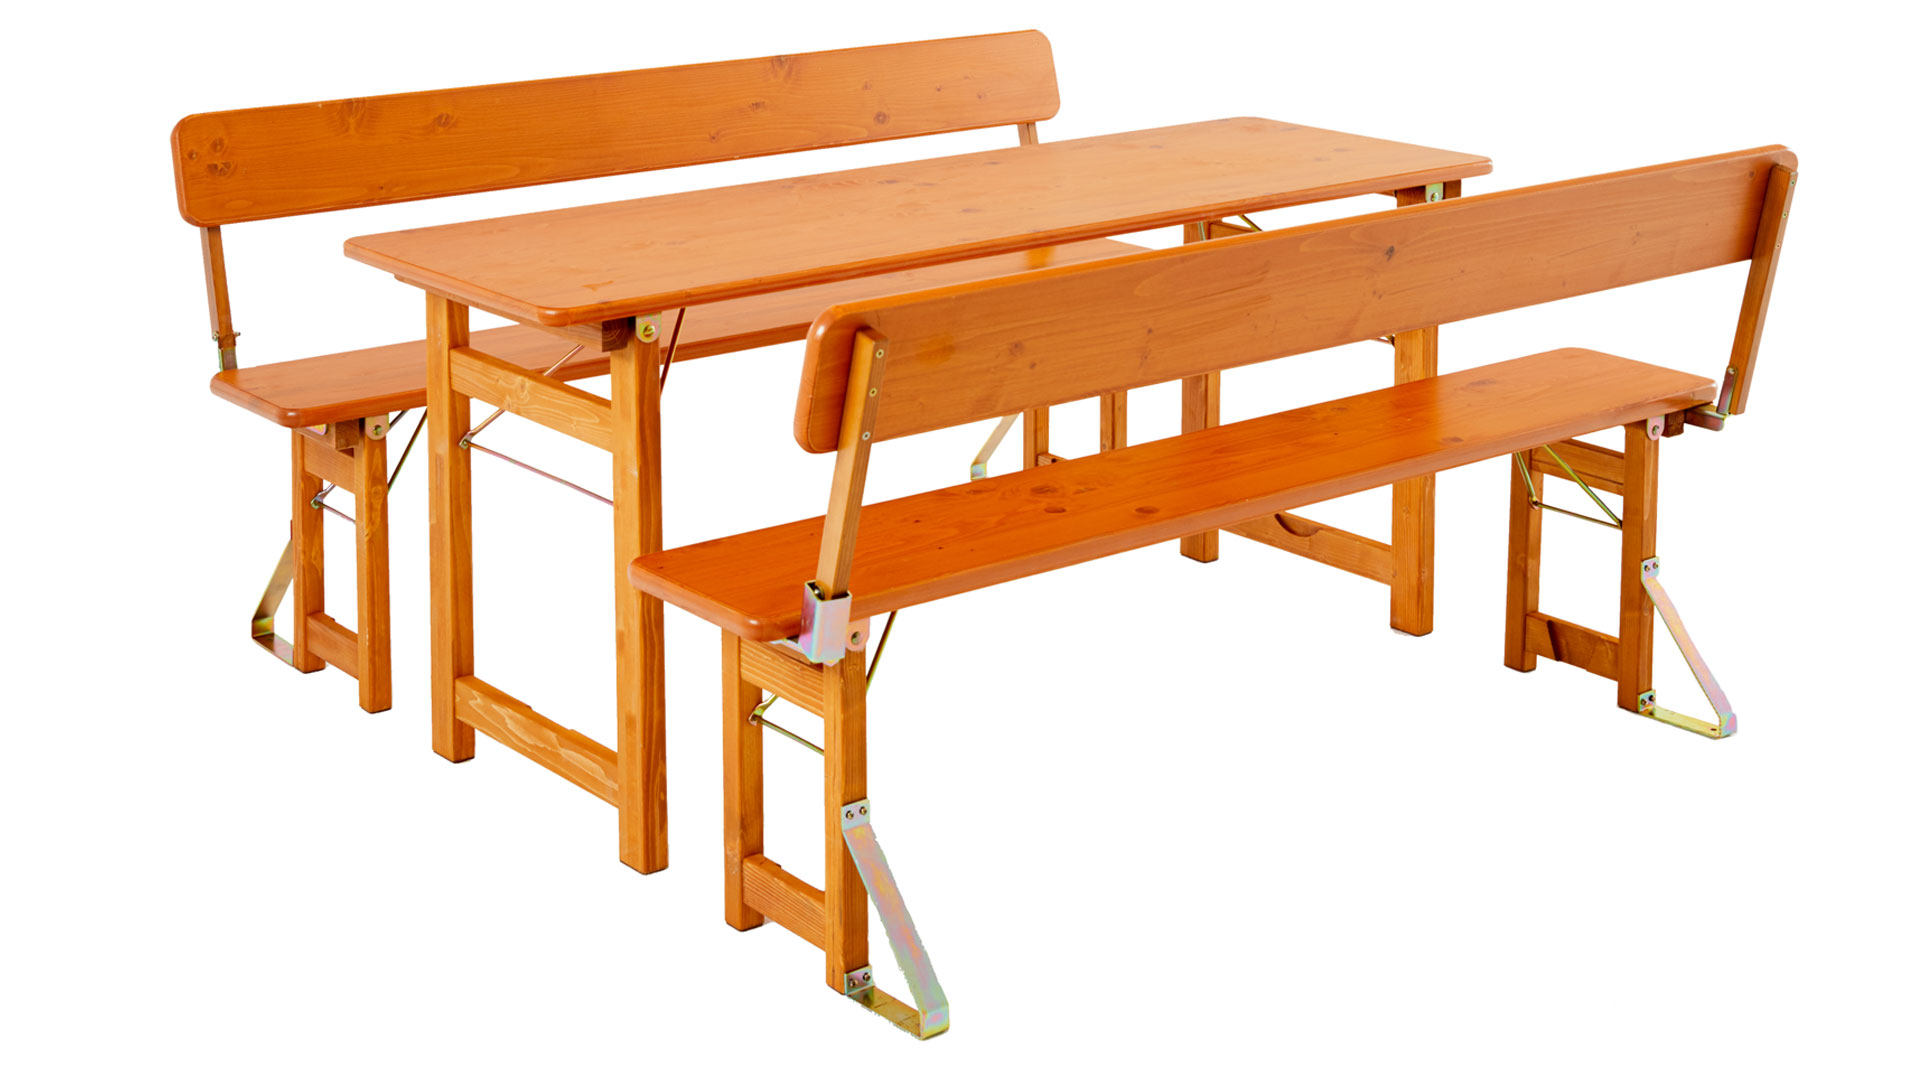 Die Designgarnitur Rustica bestehend aus Tisch und zwei Bänken mit Lehne.